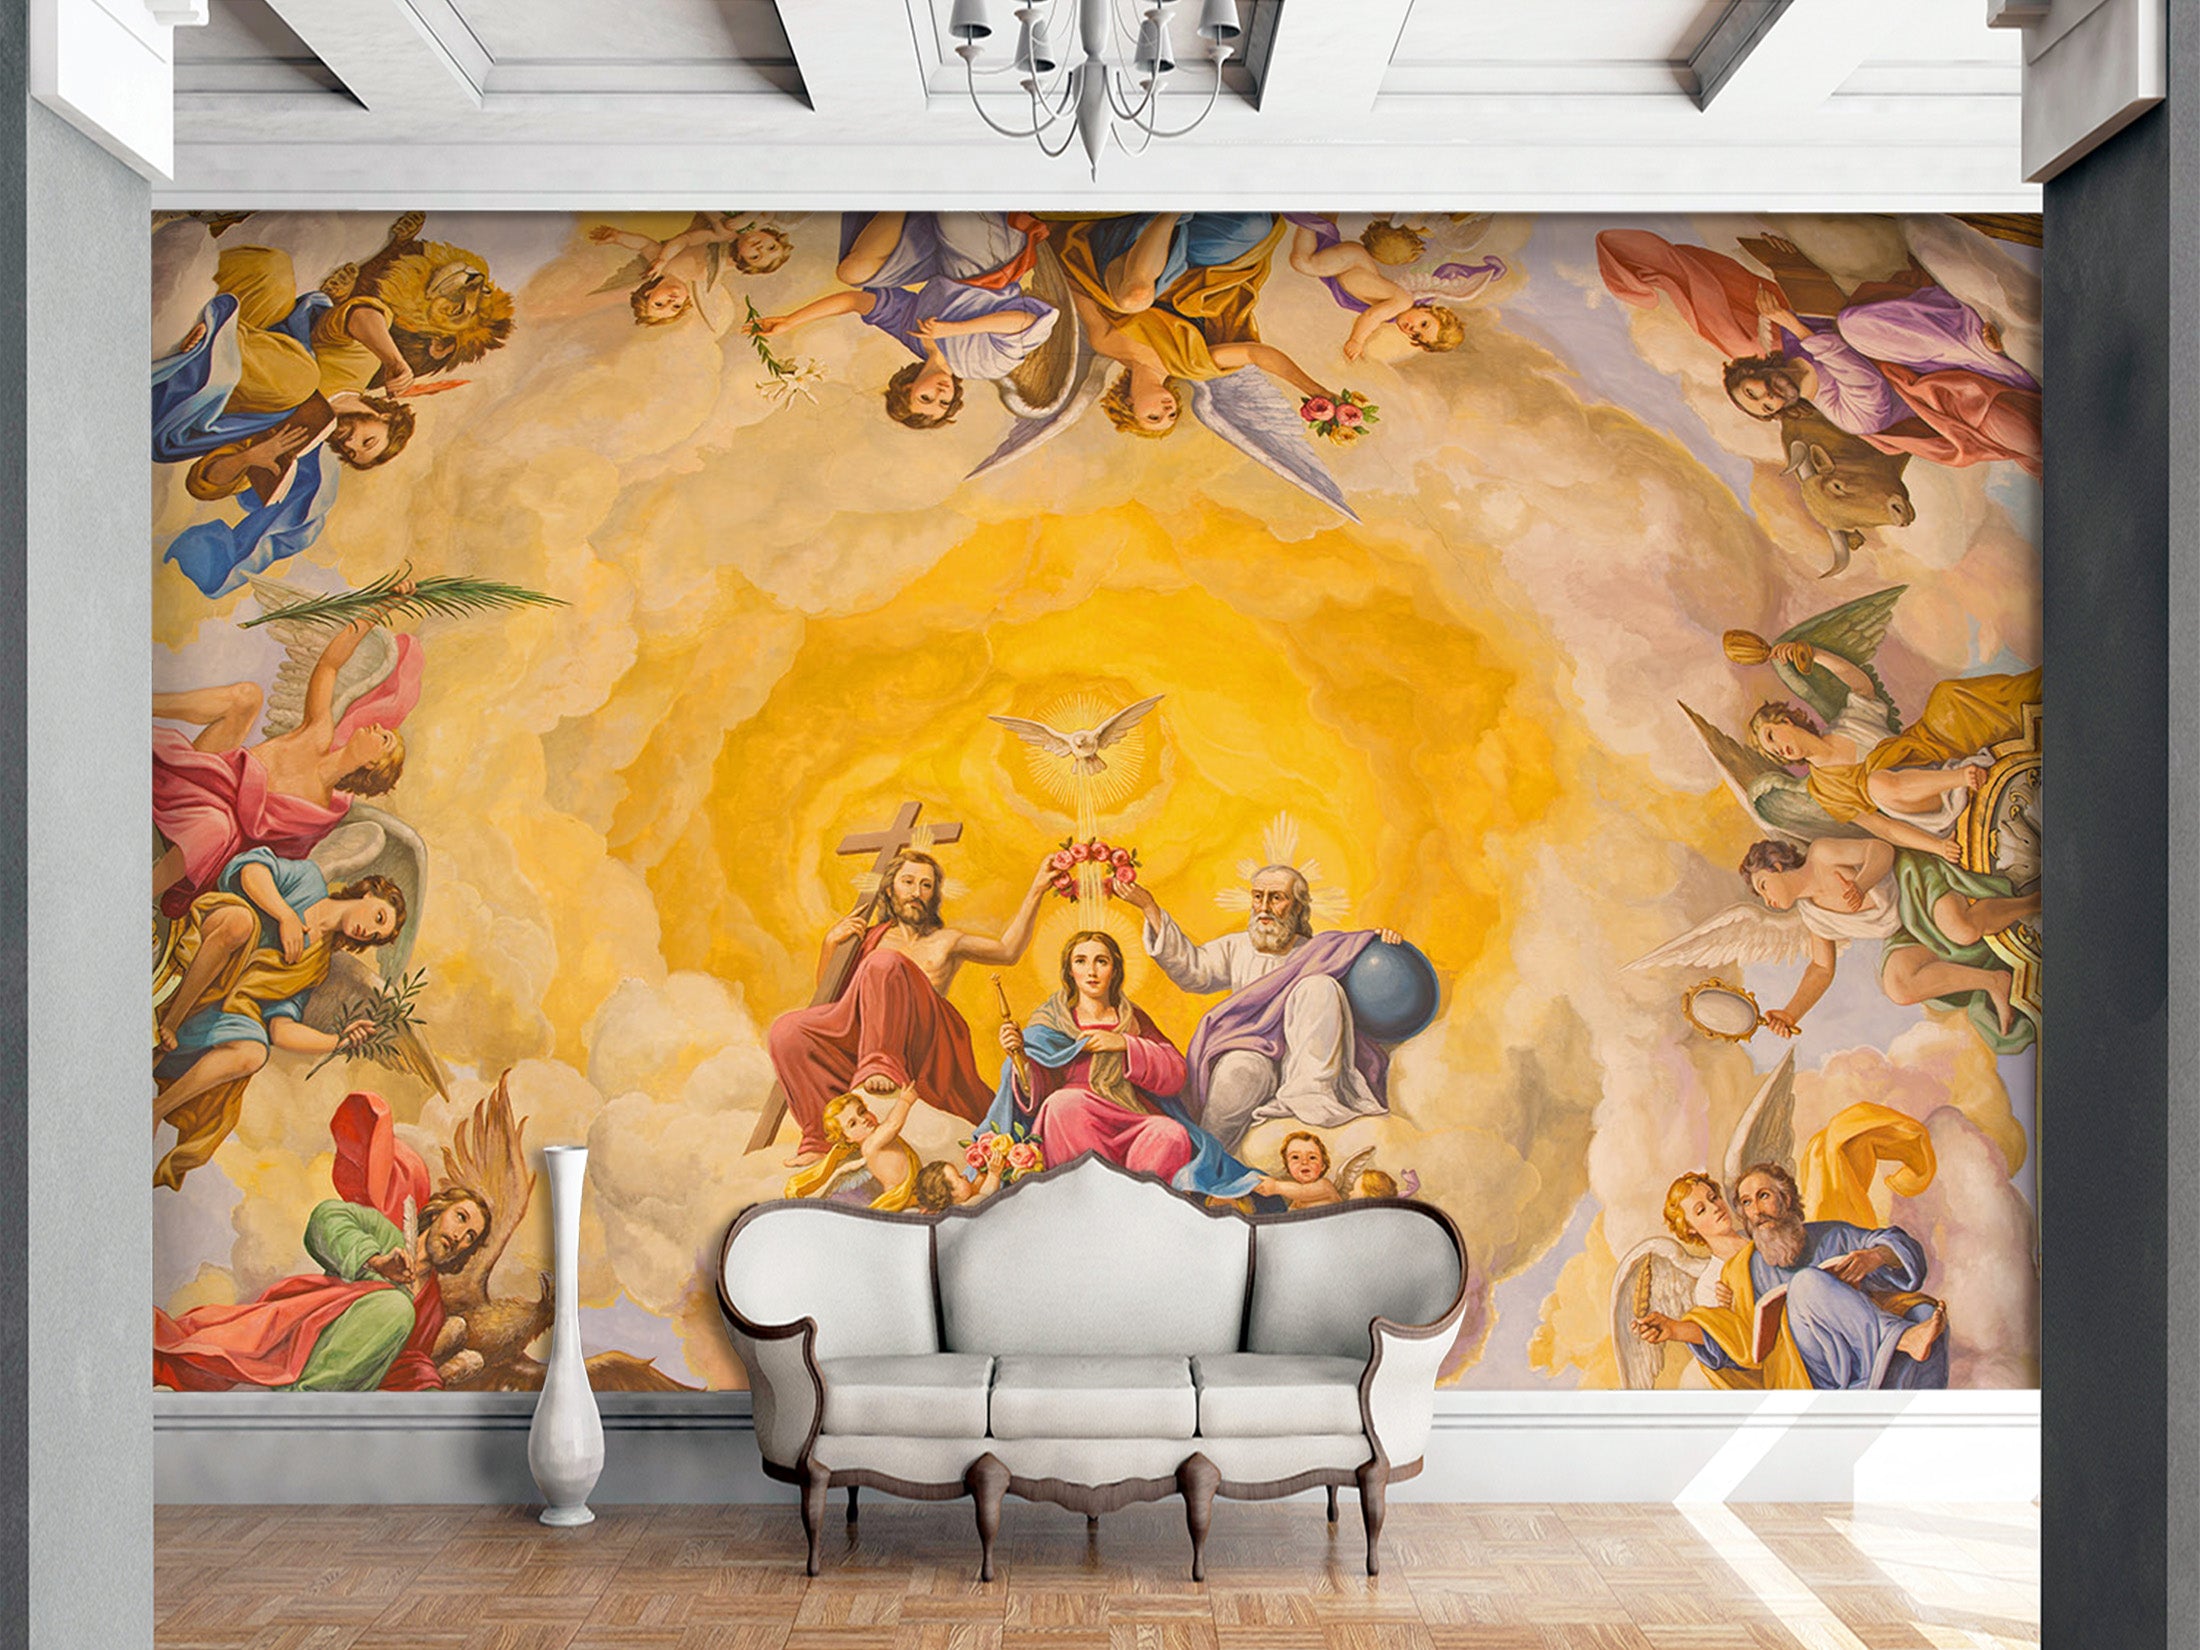 3D Golden Angel 1532 Wall Murals